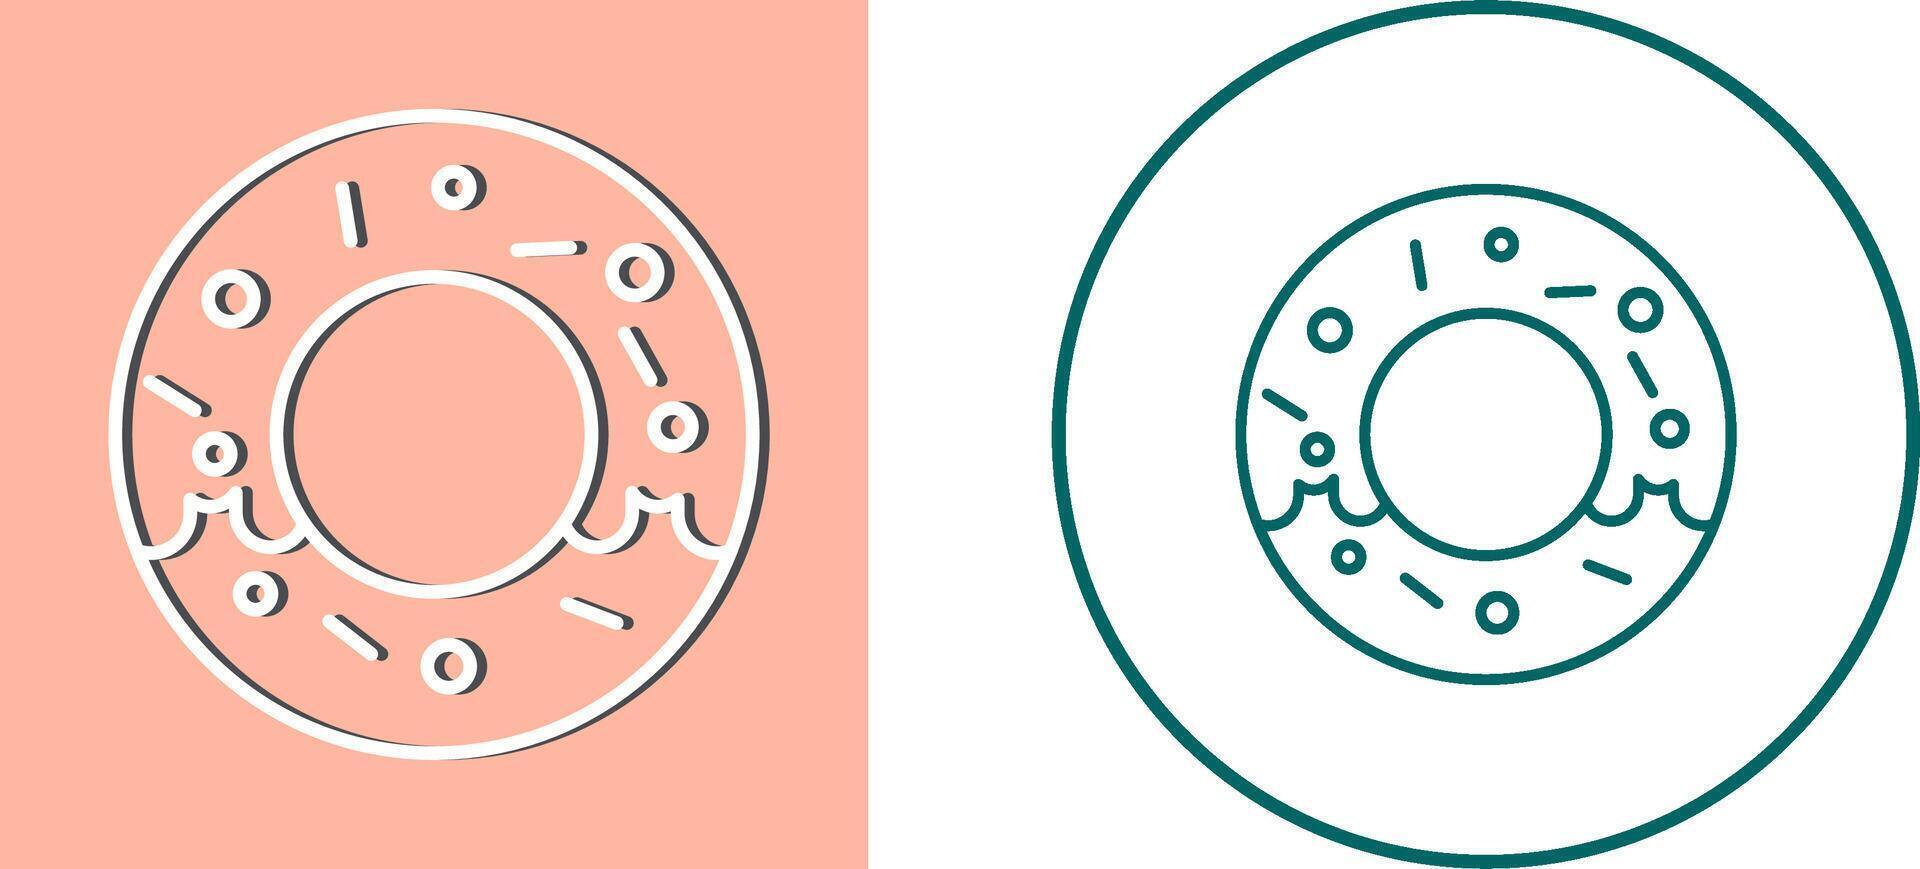 Donut-Icon-Design vektor